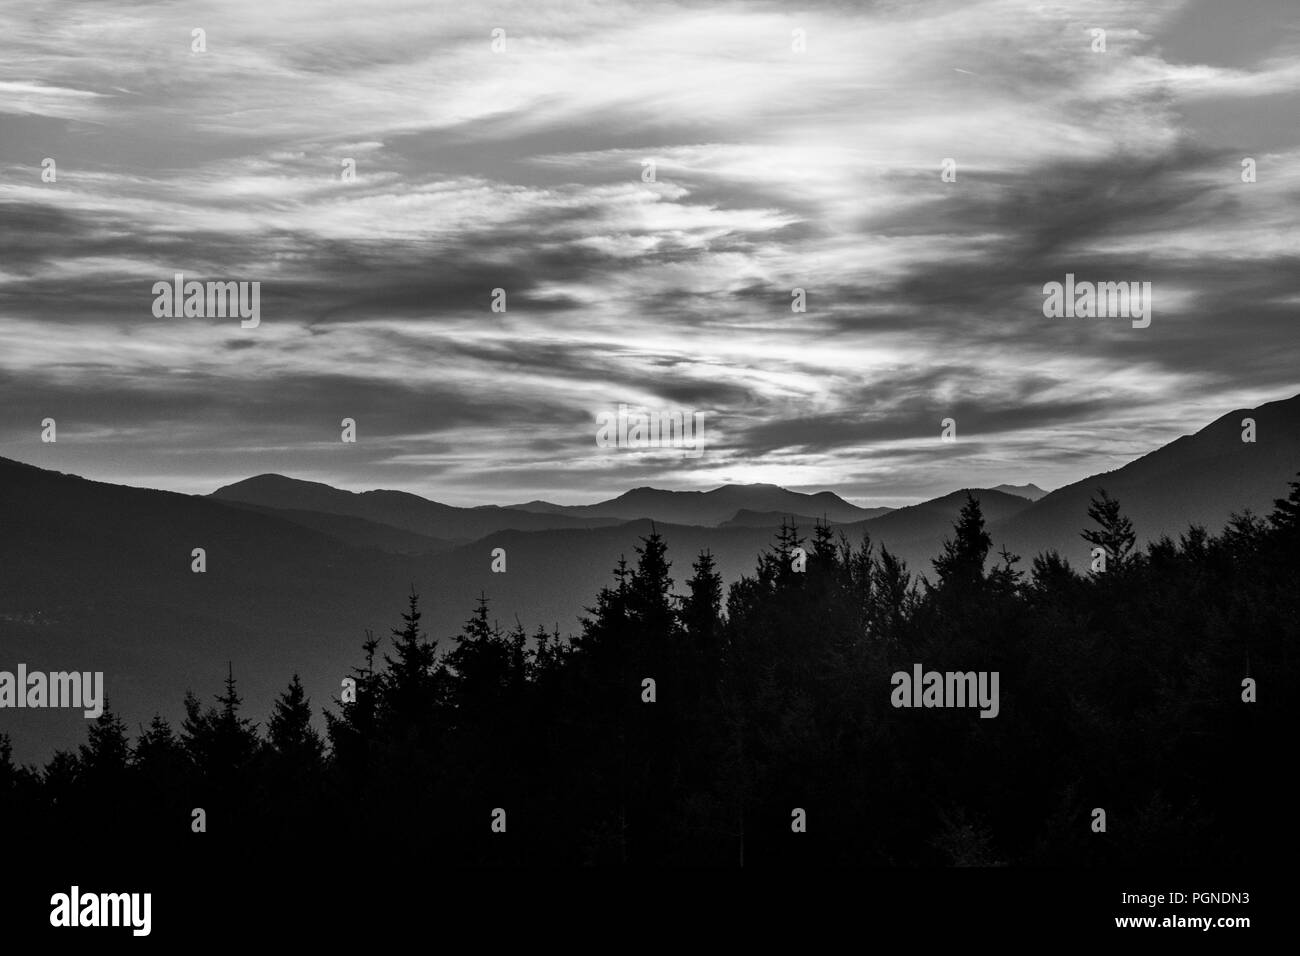 Profilo di montagna e foresta con cielo molto nuvoloso in bianco e nero Foto Stock